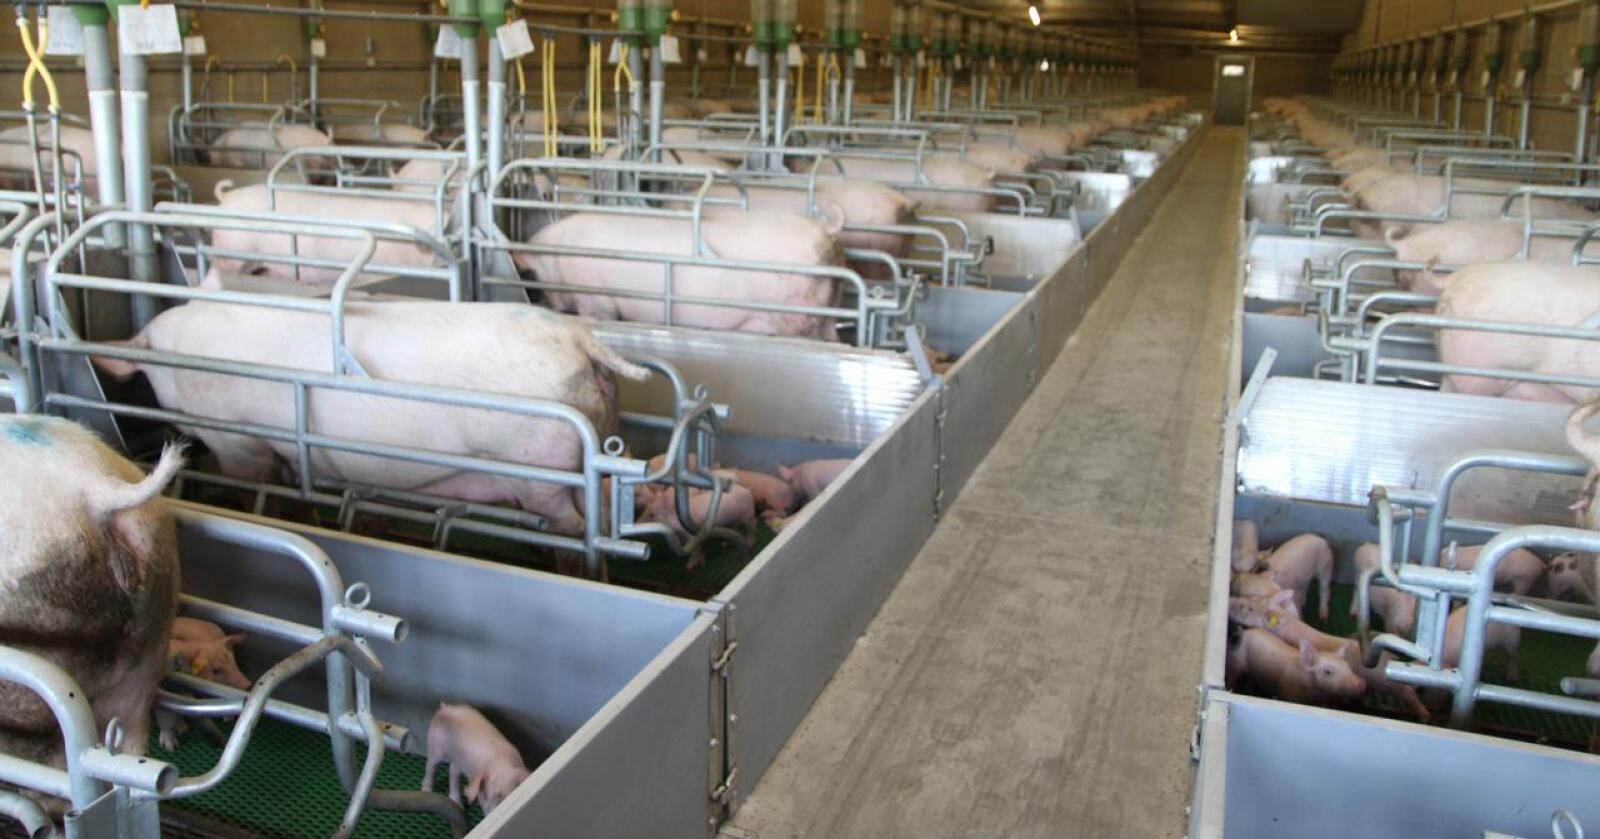 Ulike krav: I utlandet holder ofte ikke svineproduksjonen samme standard som i Norge. Dette bildet er fra Nederland. (Foto: Øystein Heggdal)